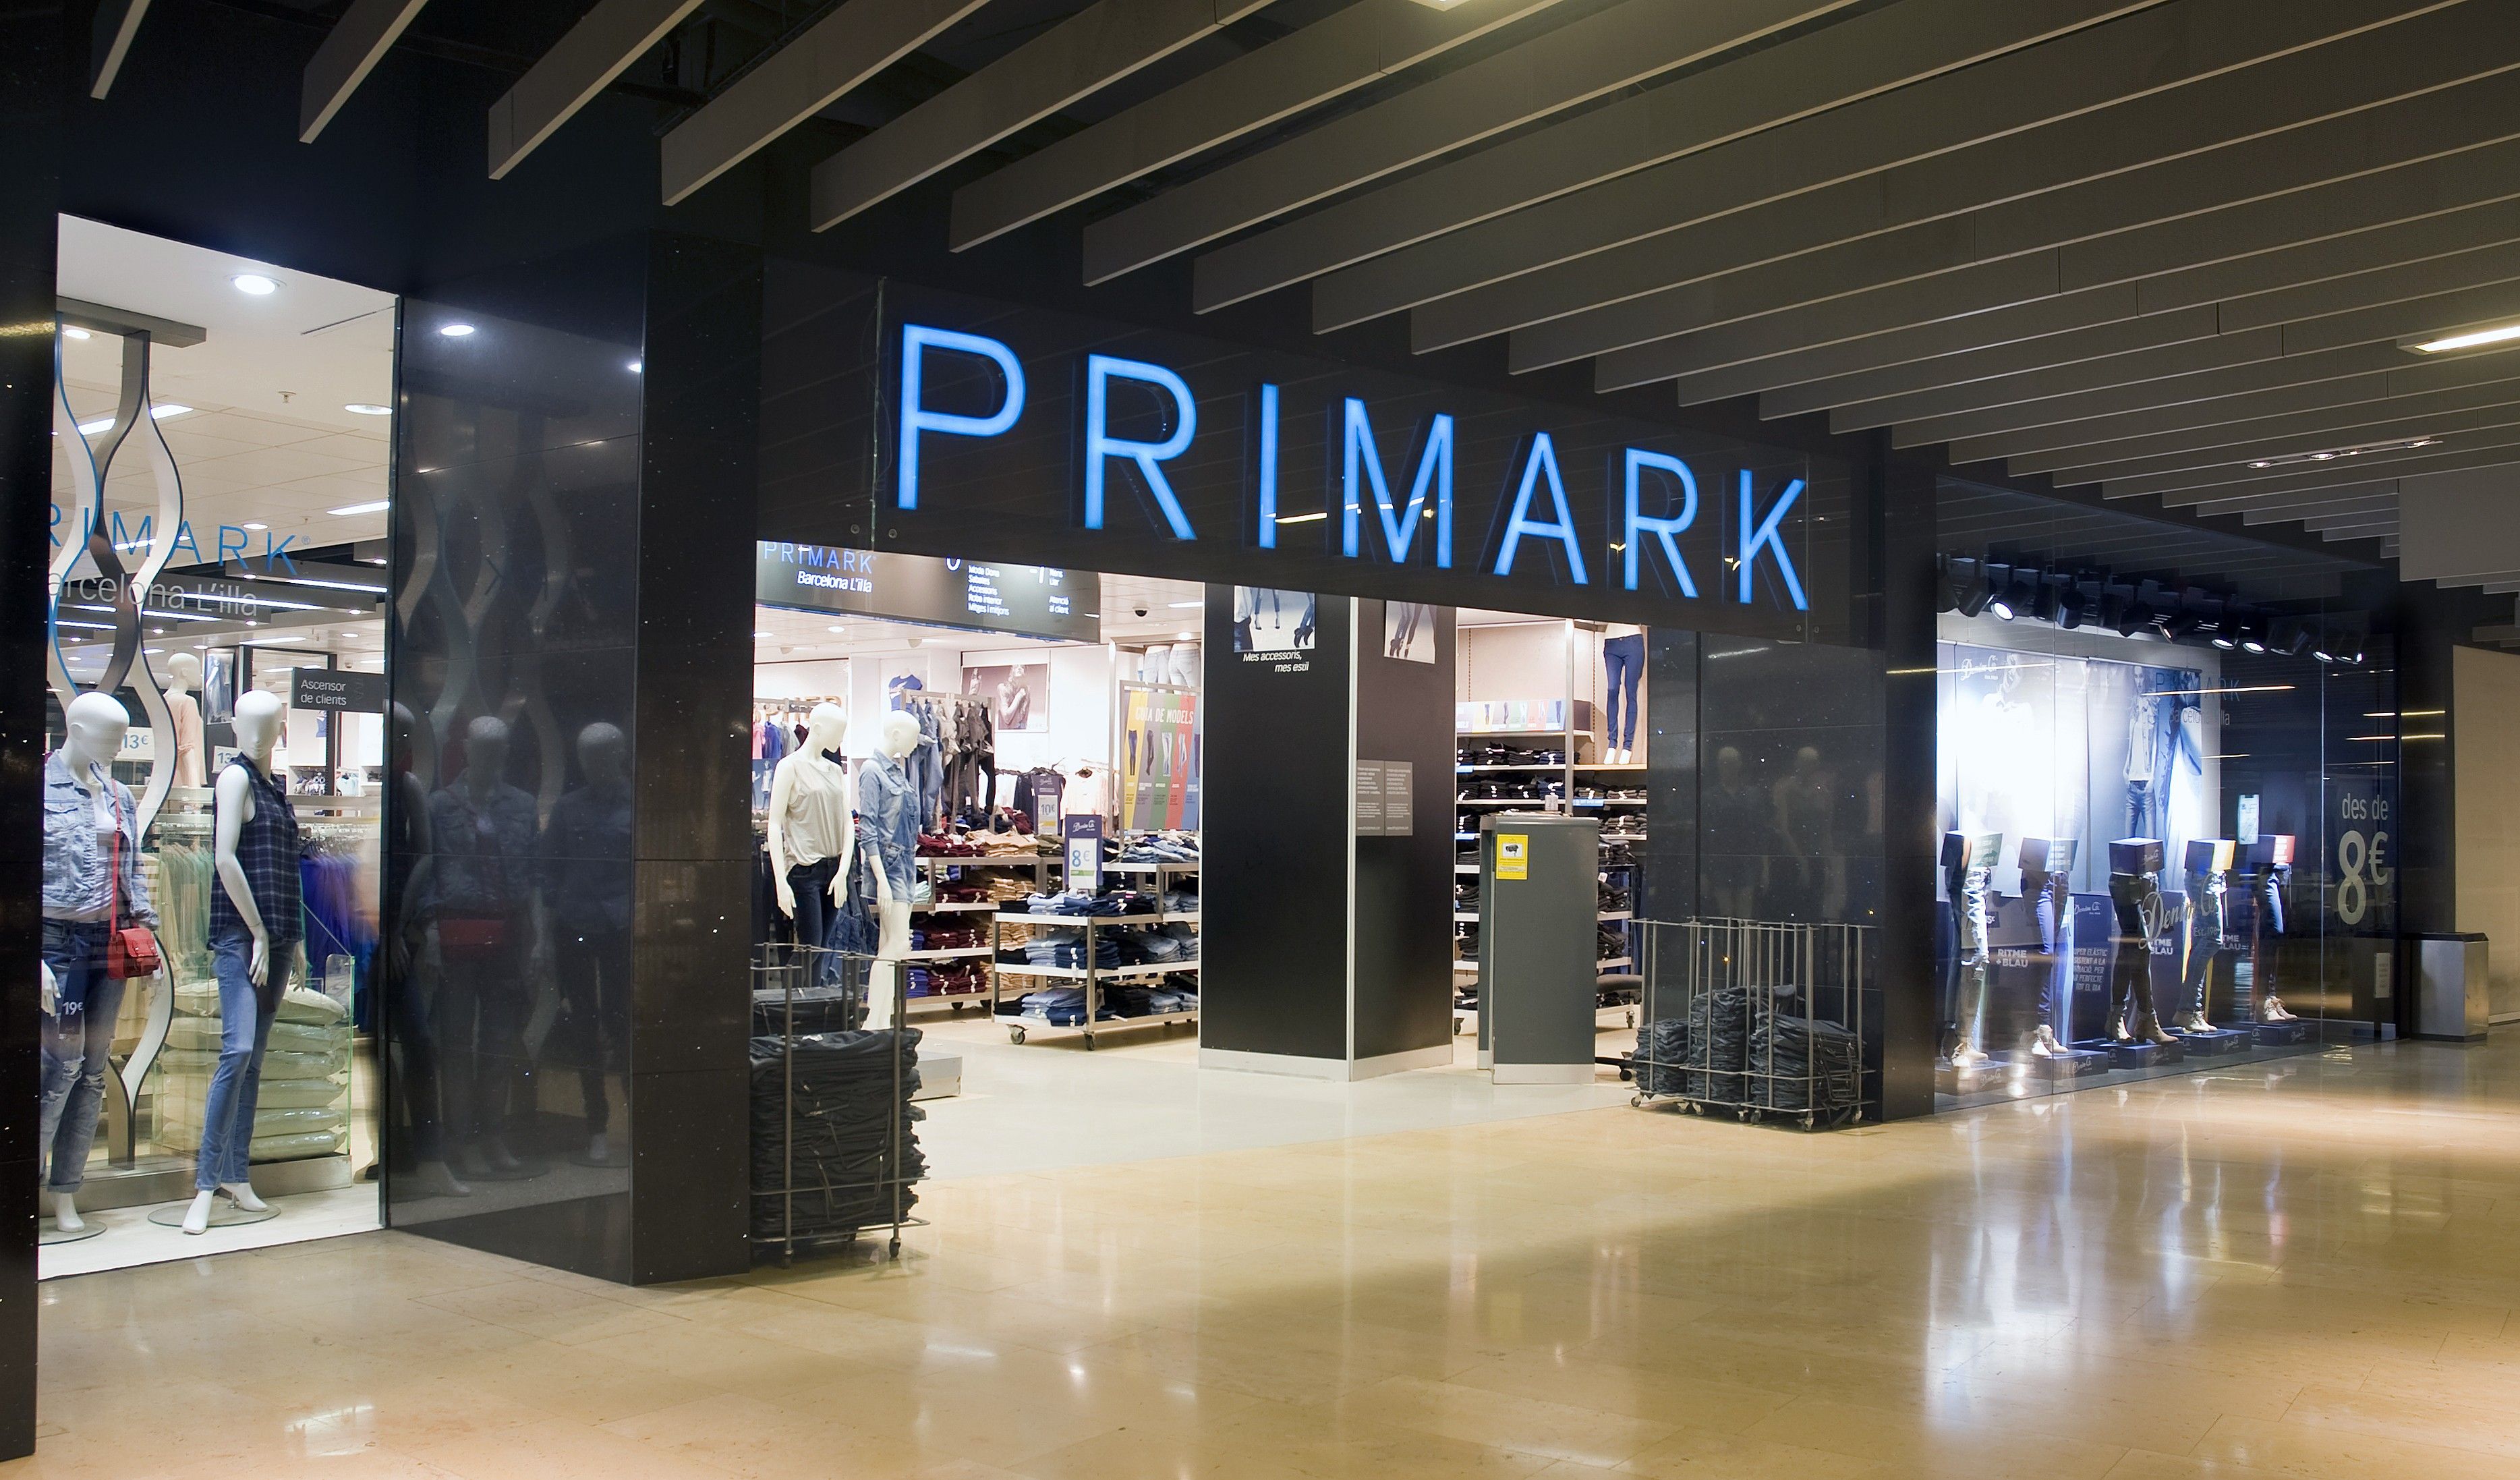 Primark - The Primark Store